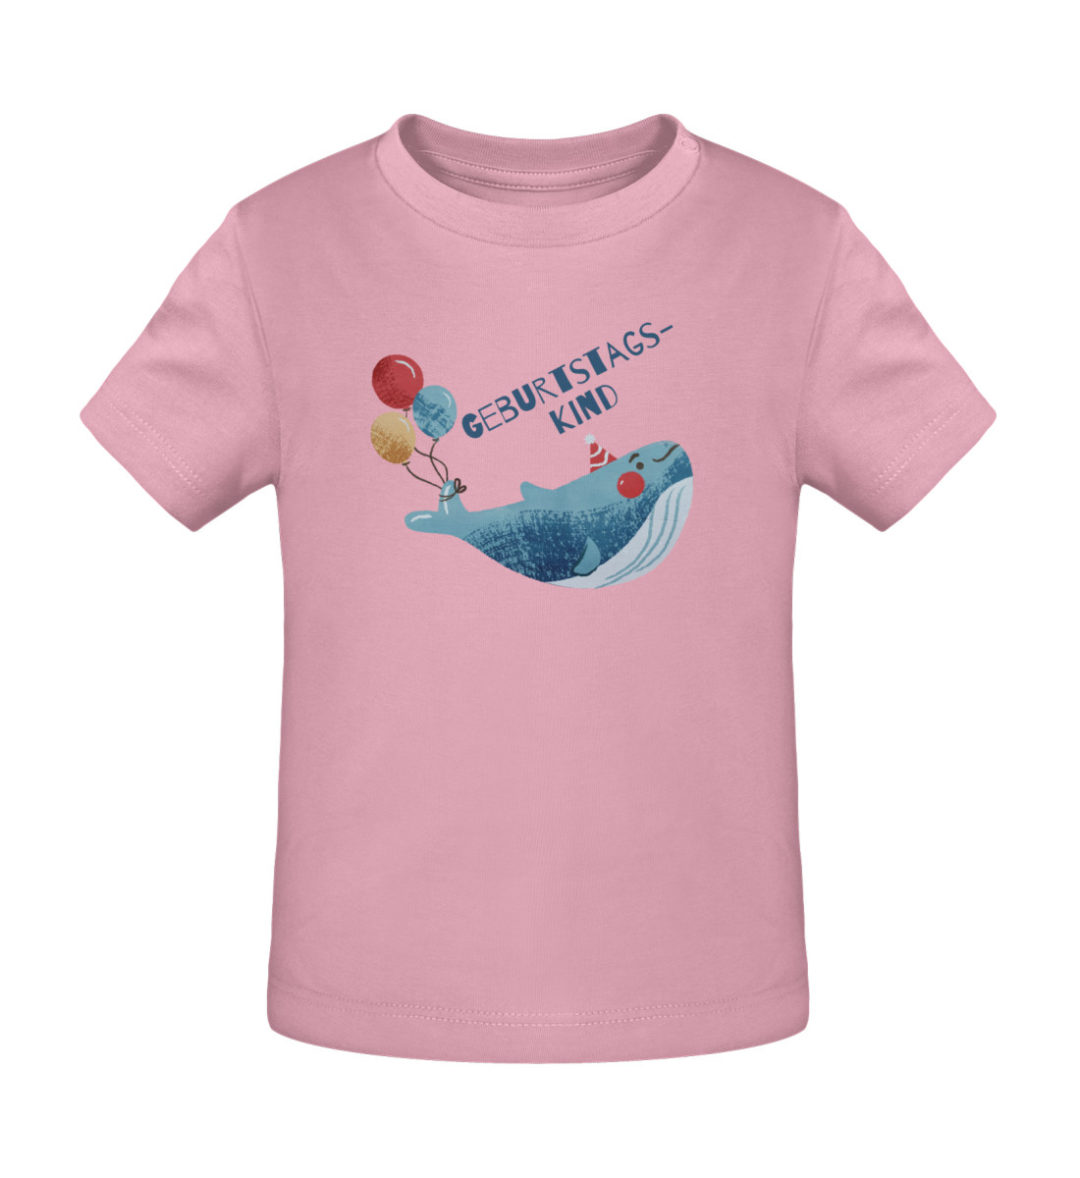 Geburtstagskind - Baby Creator T-Shirt ST/ST-6883